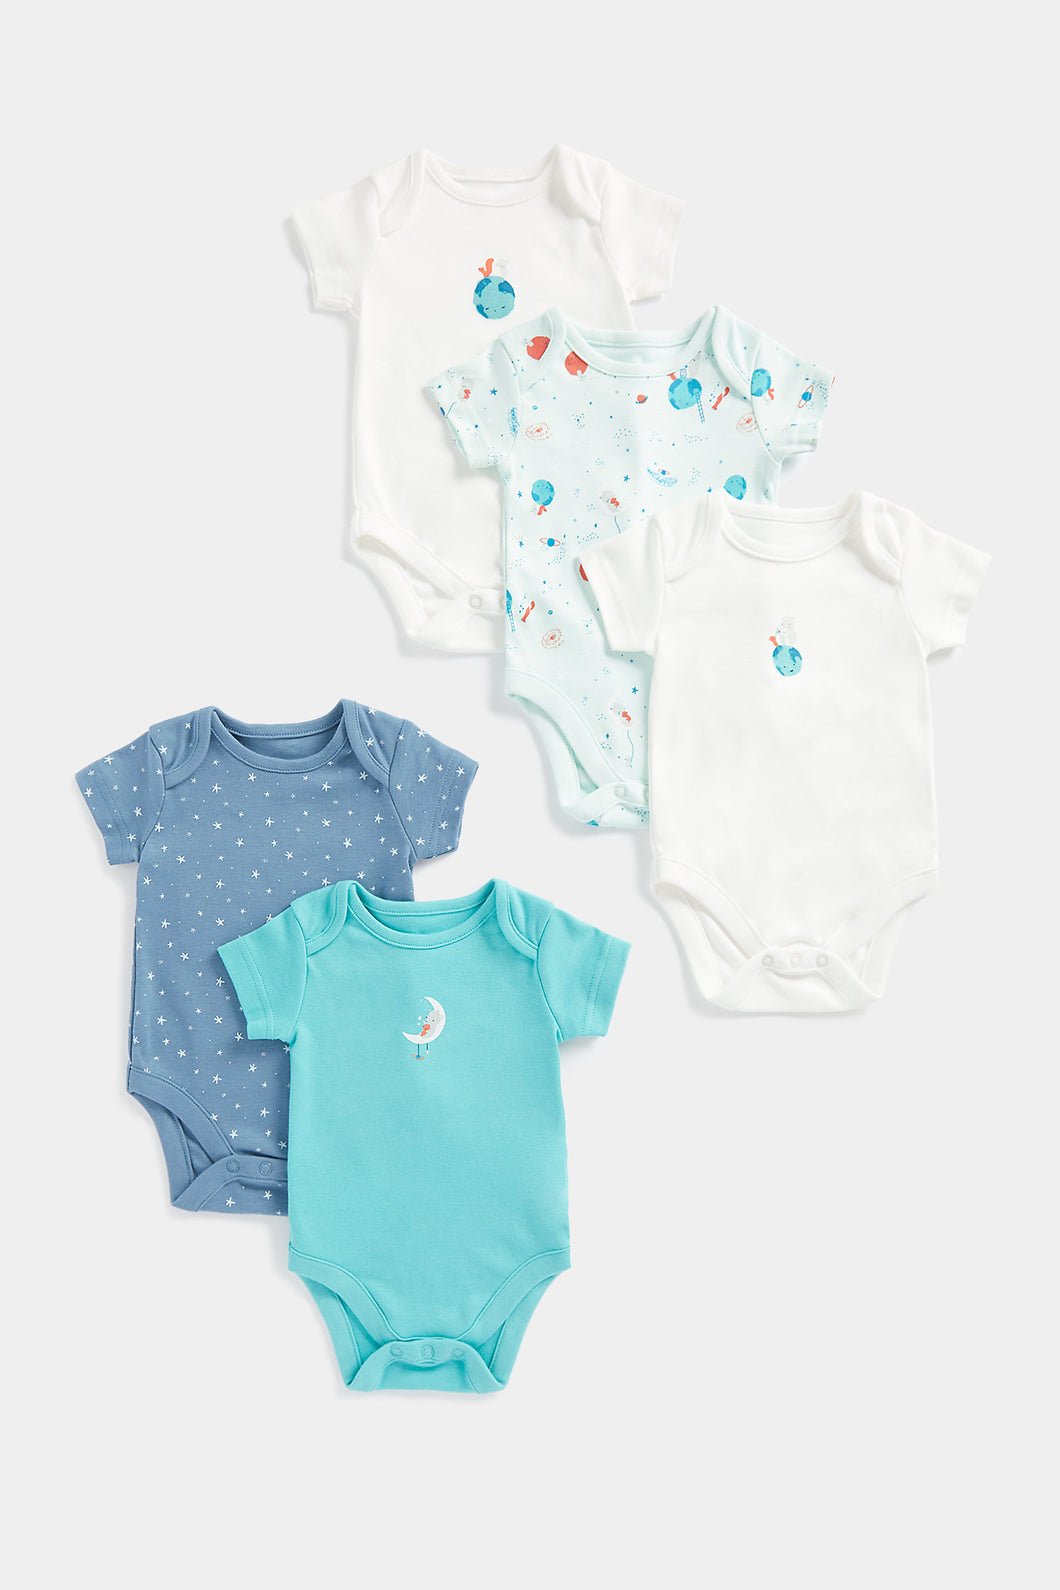 Mothercare Stargazer Short-Sleeved Baby Bodysuits - 5 Pack